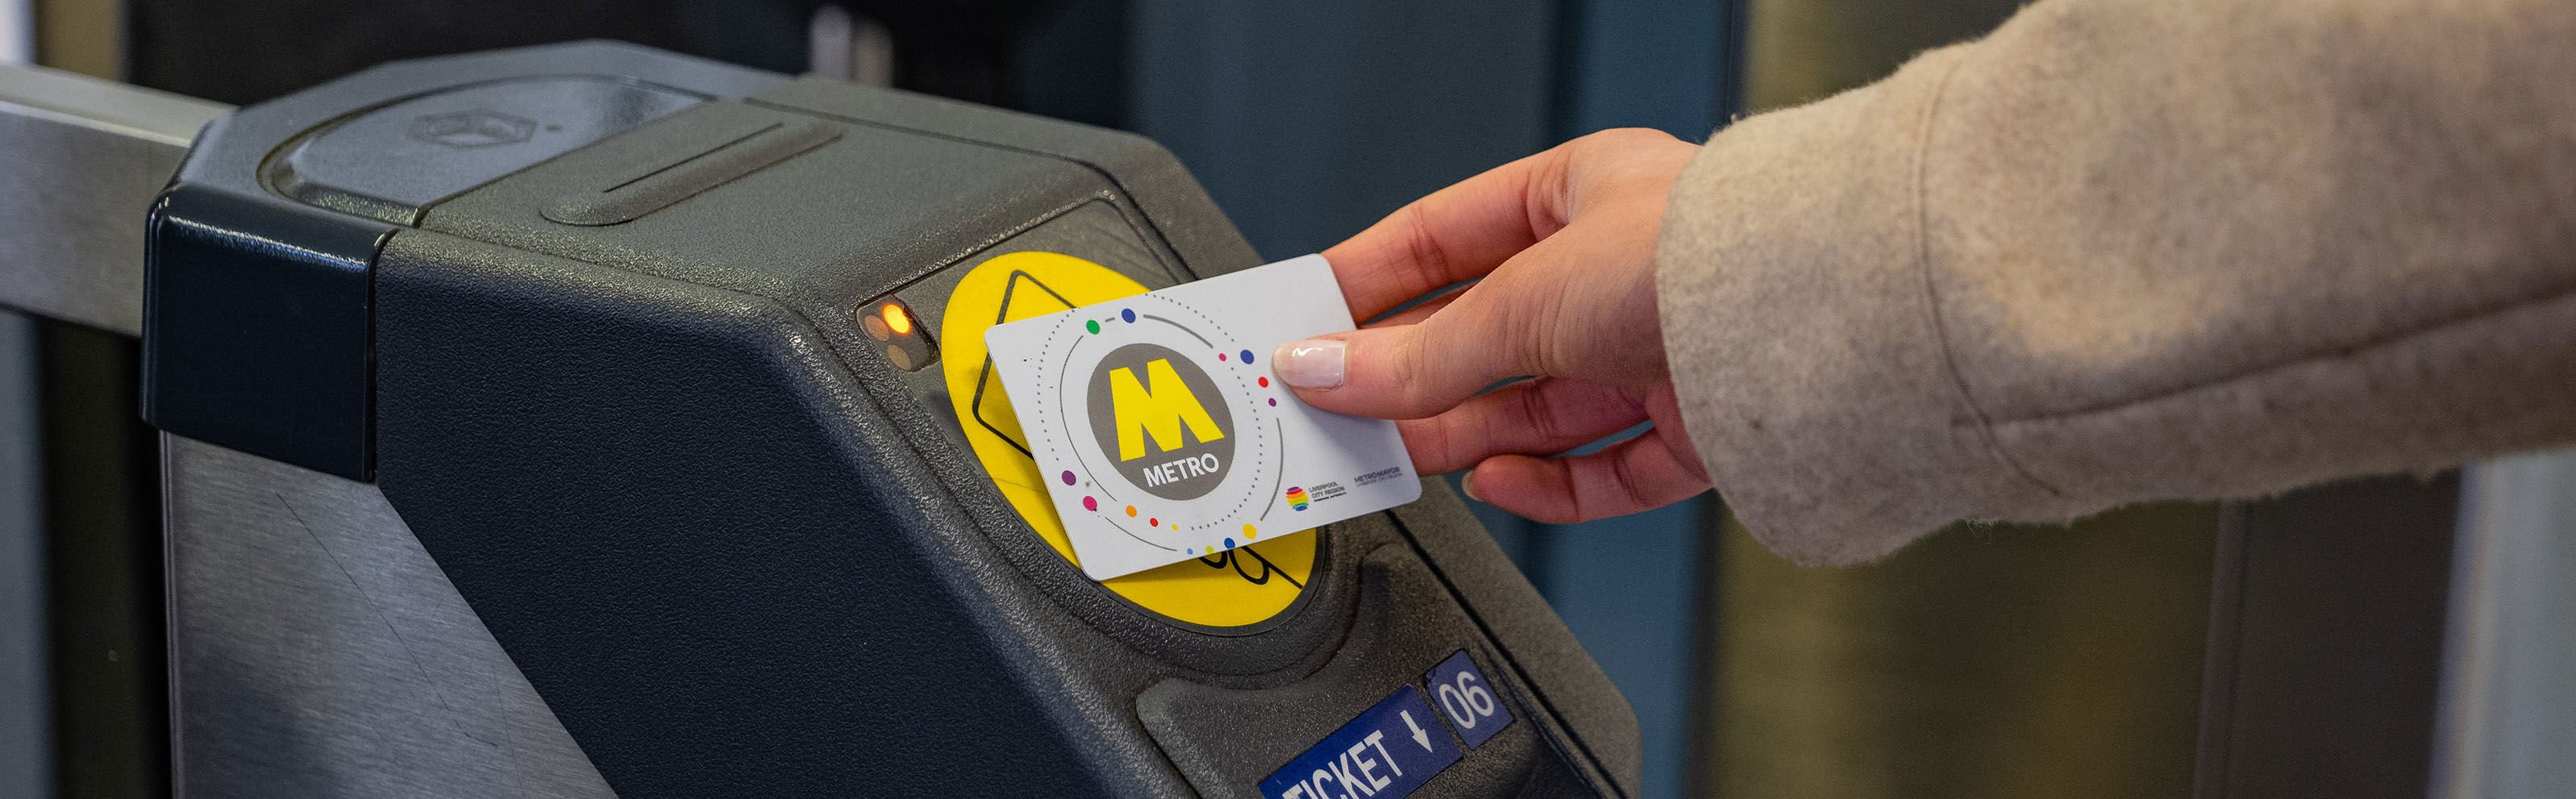 A passenger tapping a railpass card on a ticket barrier. 